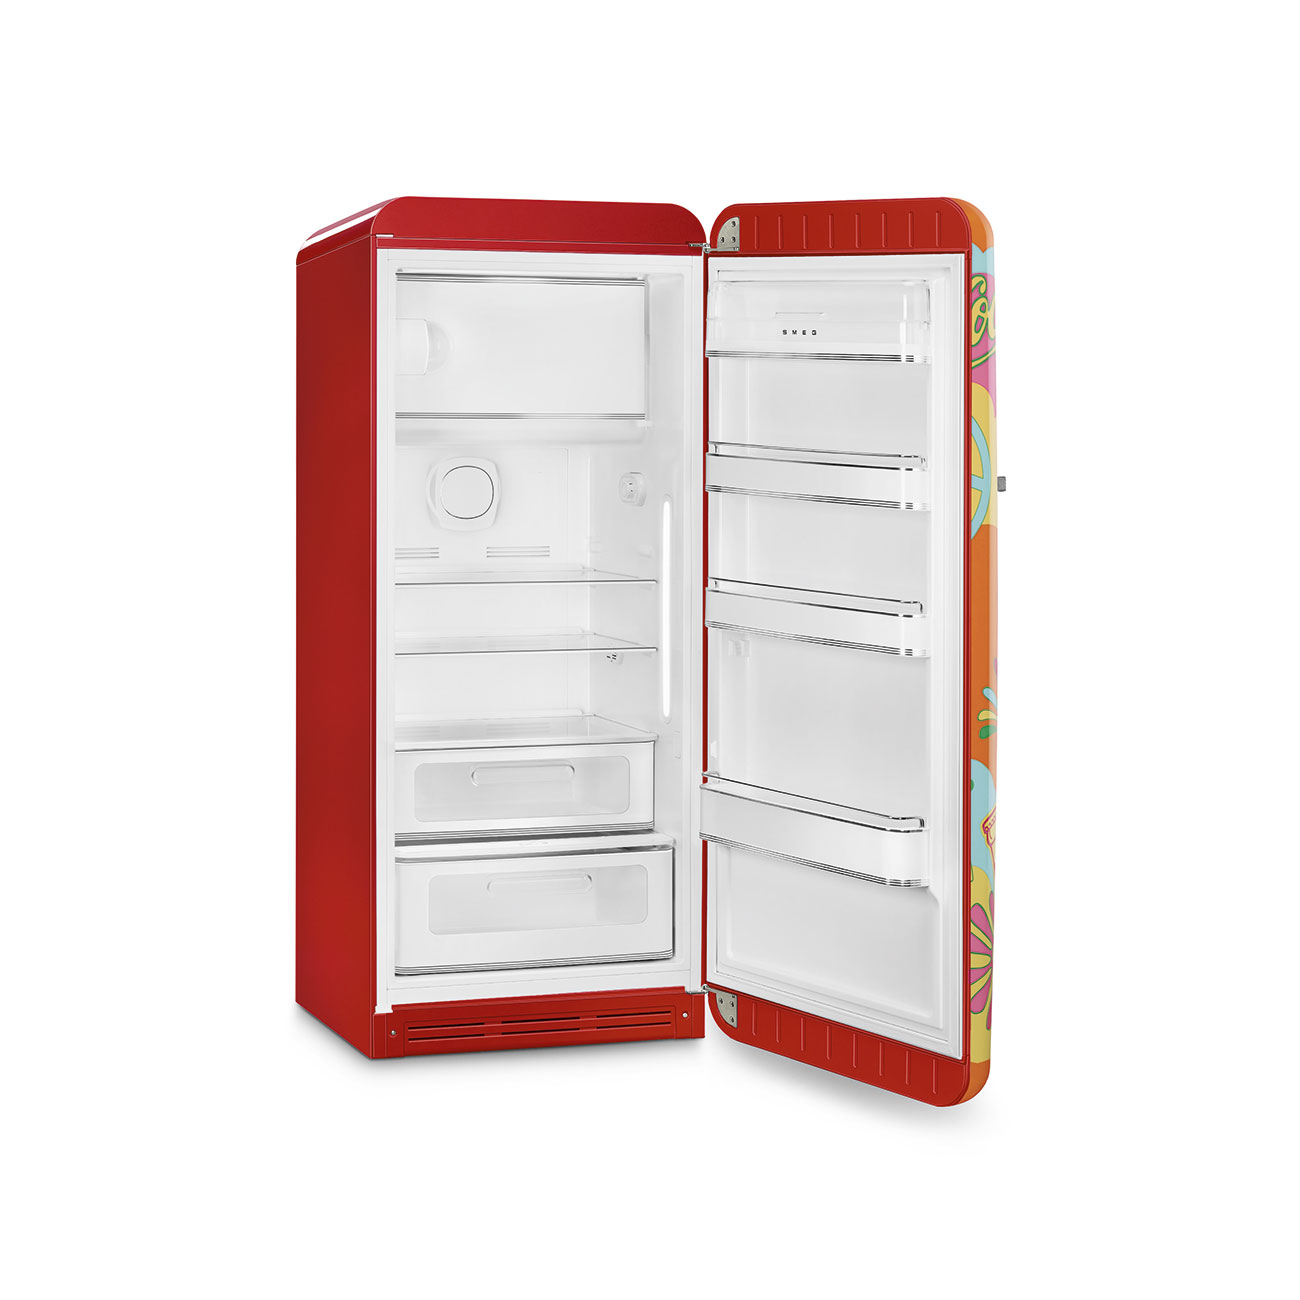 Decorated / Special refrigerator - Smeg_4